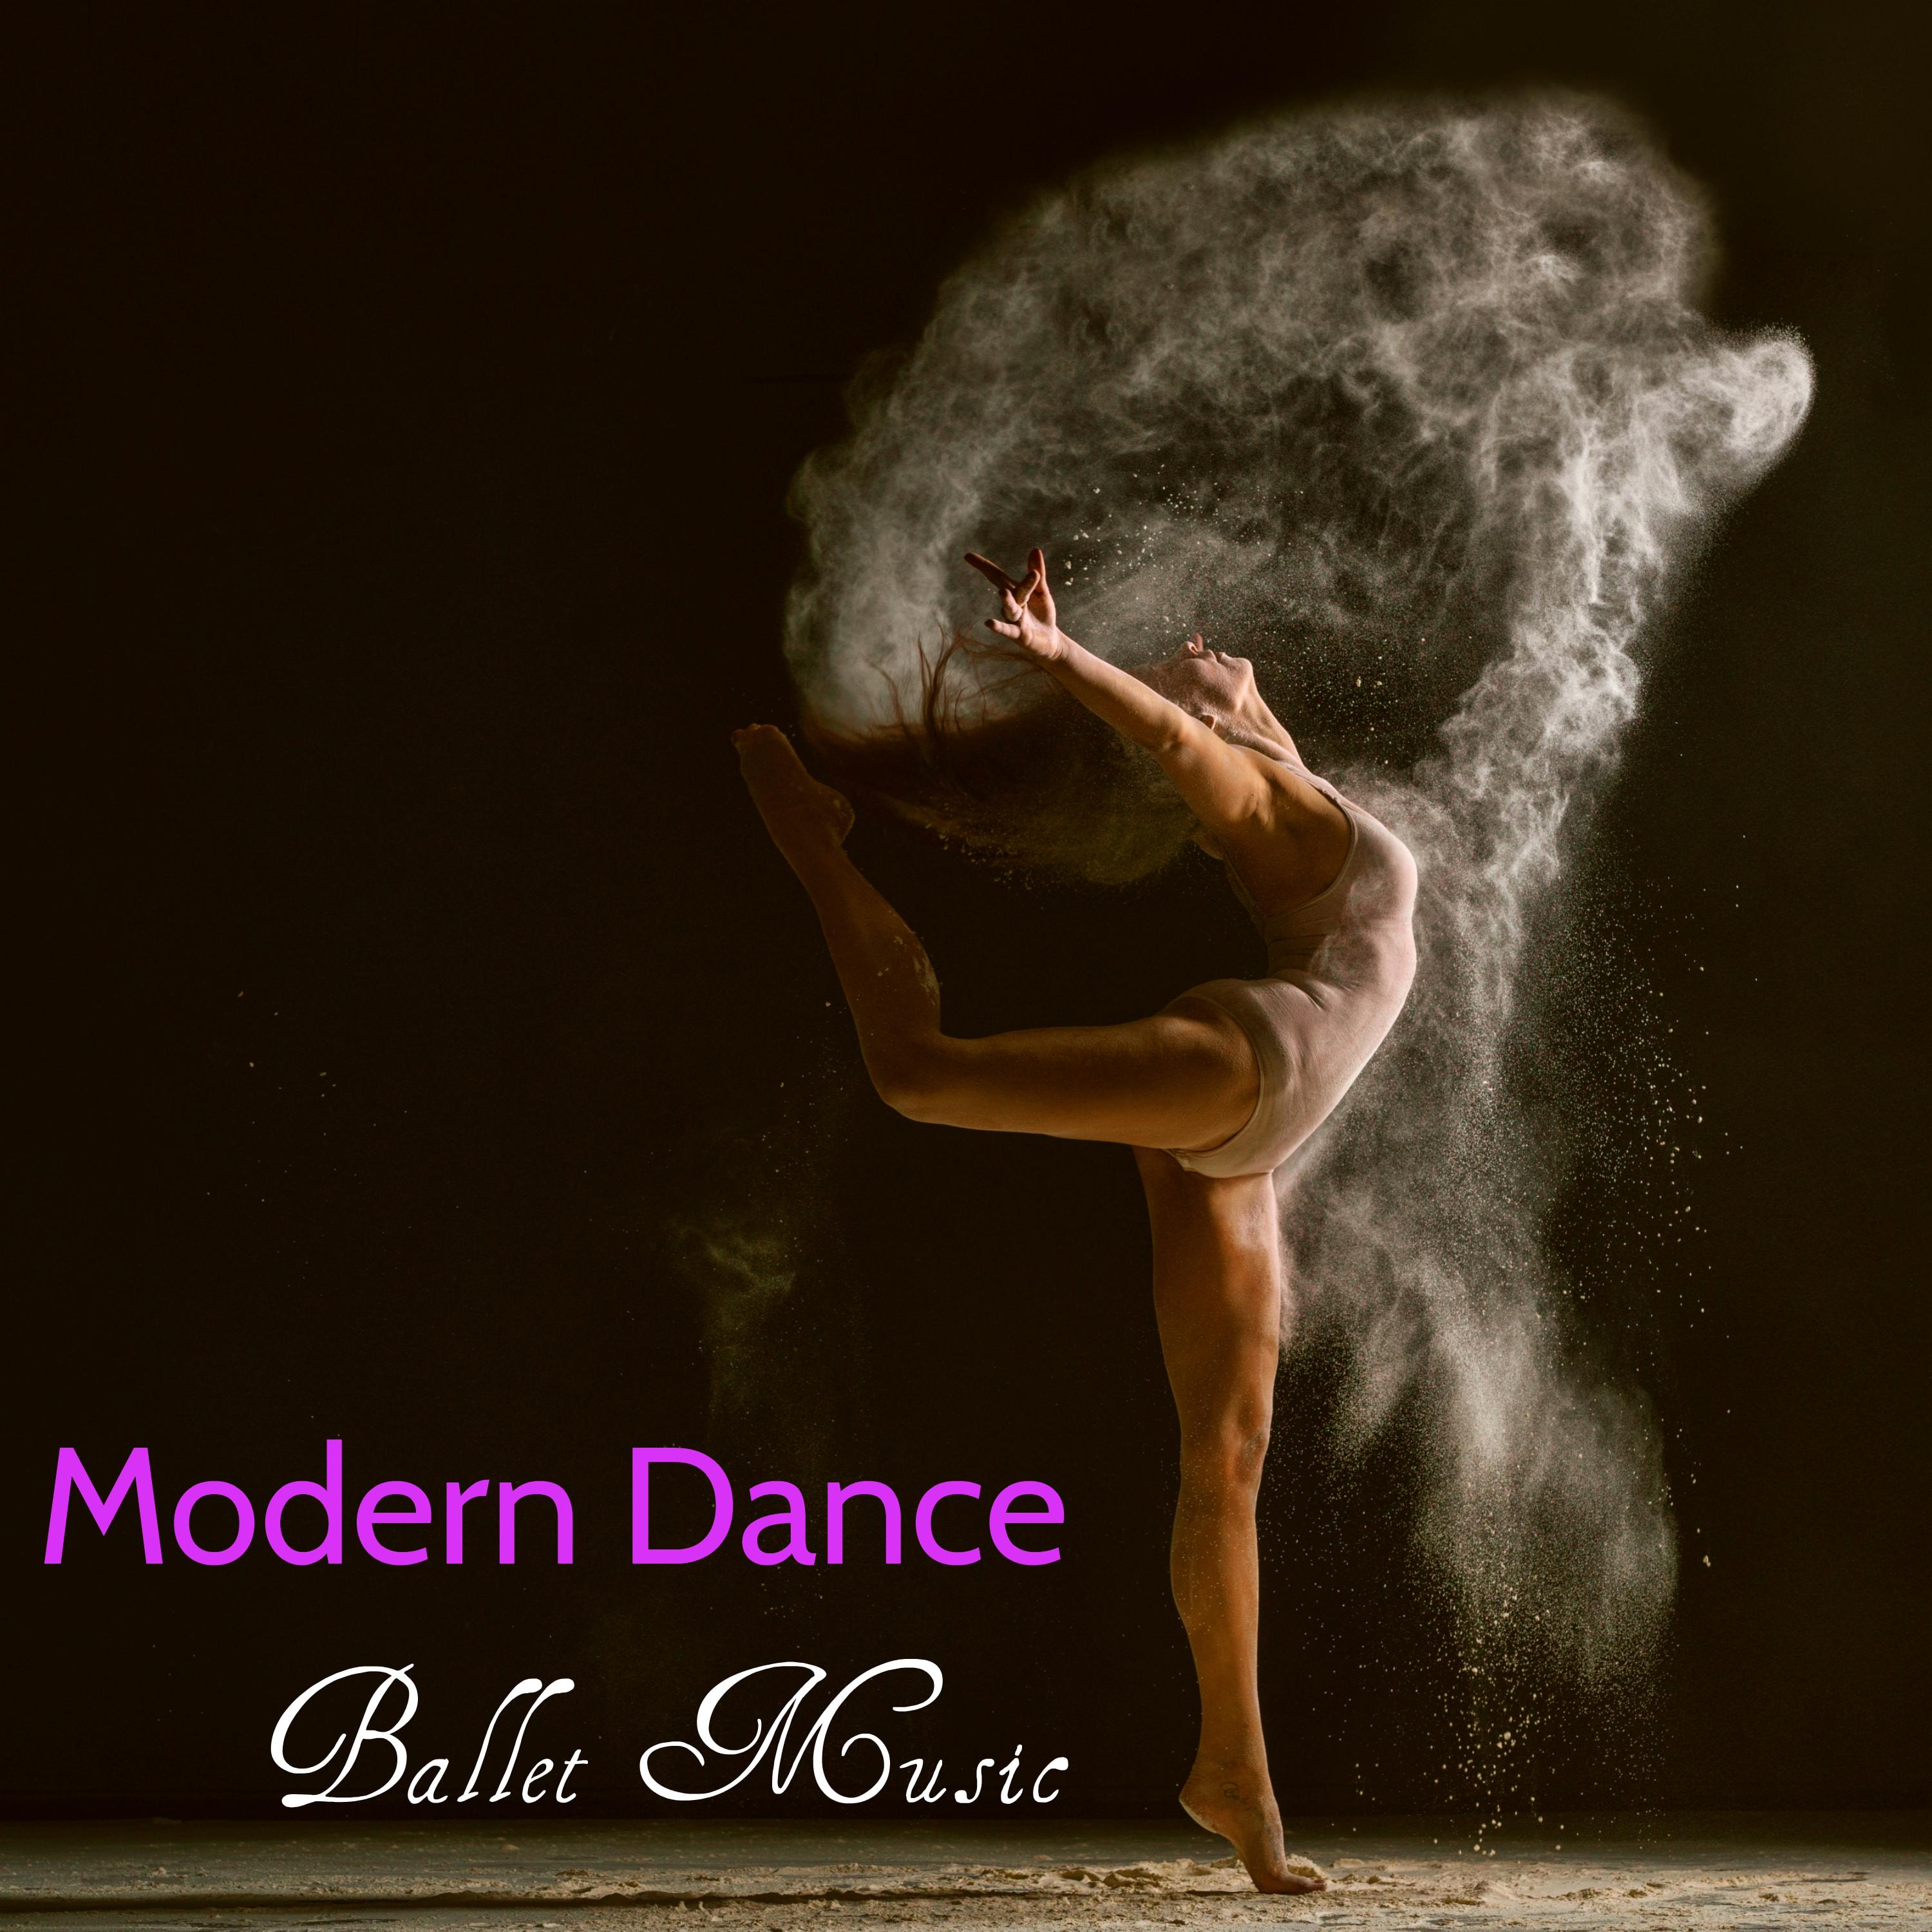 Prima Ballerina - Orchestral Music